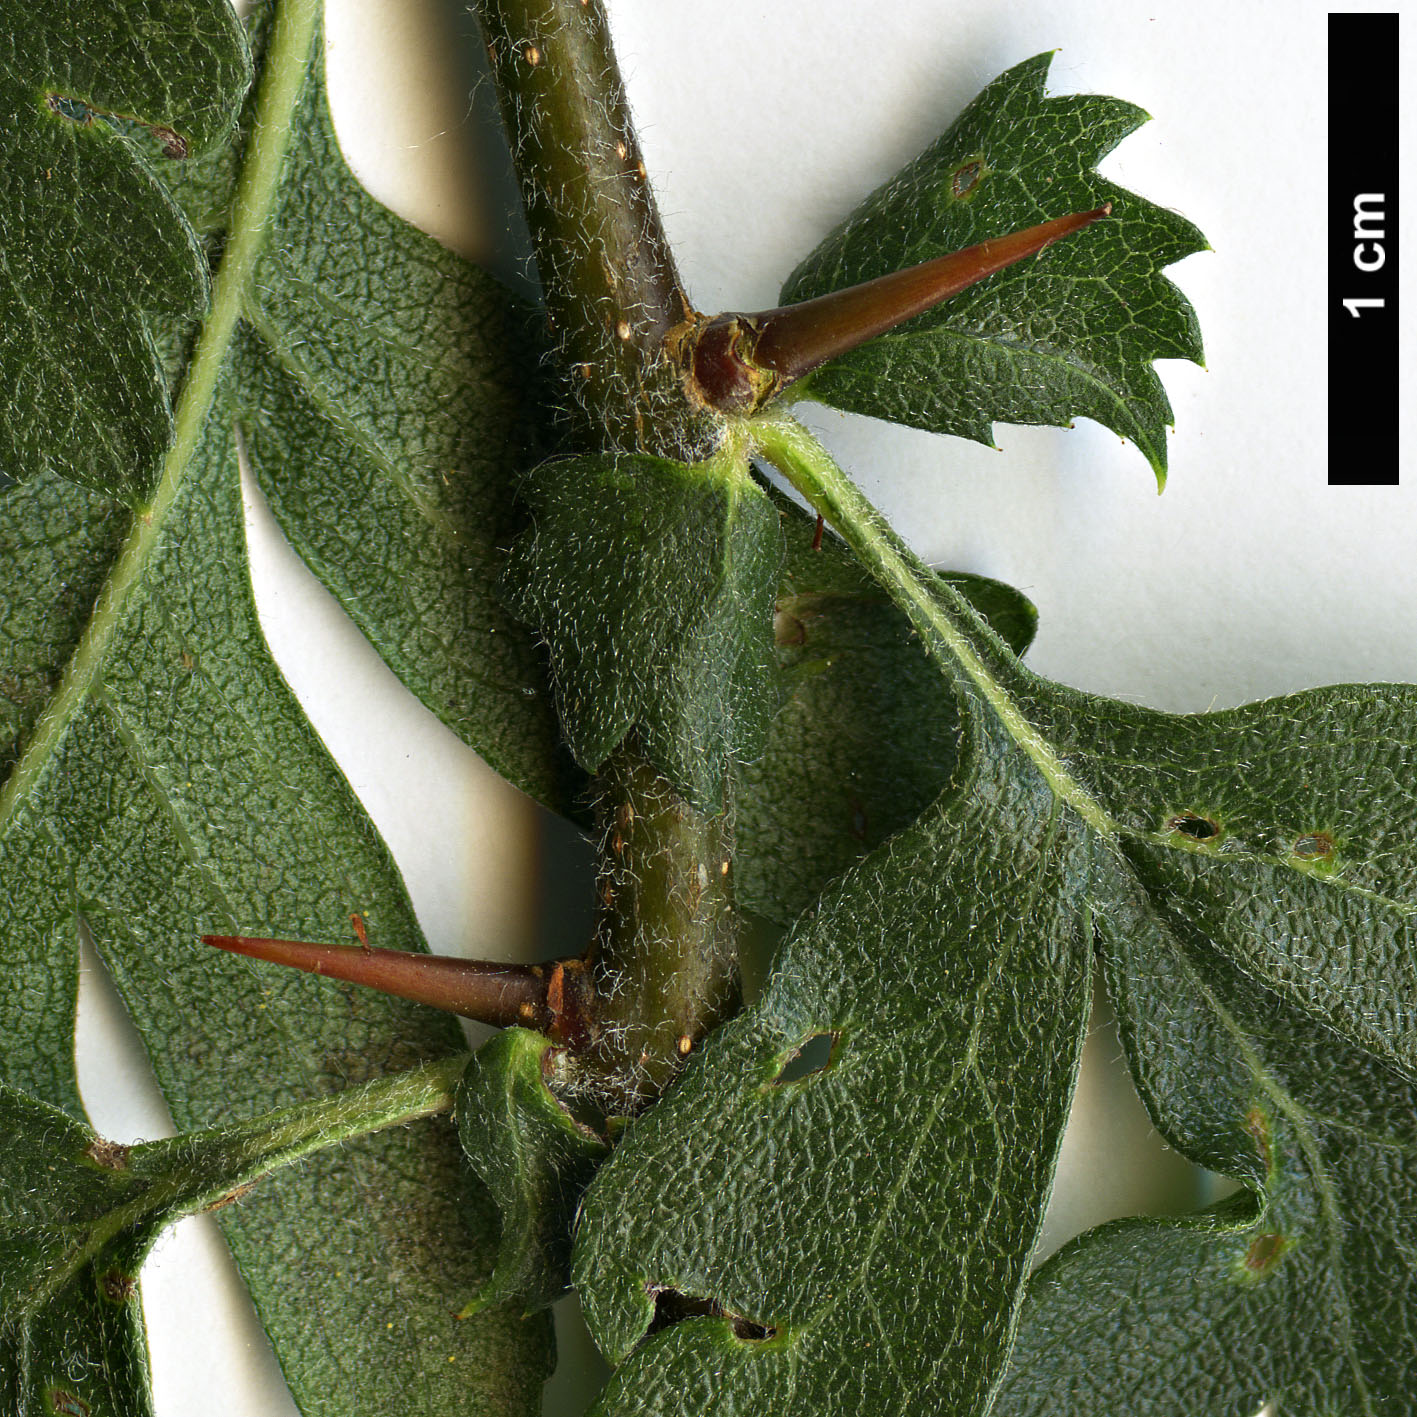 High resolution image: Family: Rosaceae - Genus: Crataegus - Taxon: azarolus - SpeciesSub: var. pontica